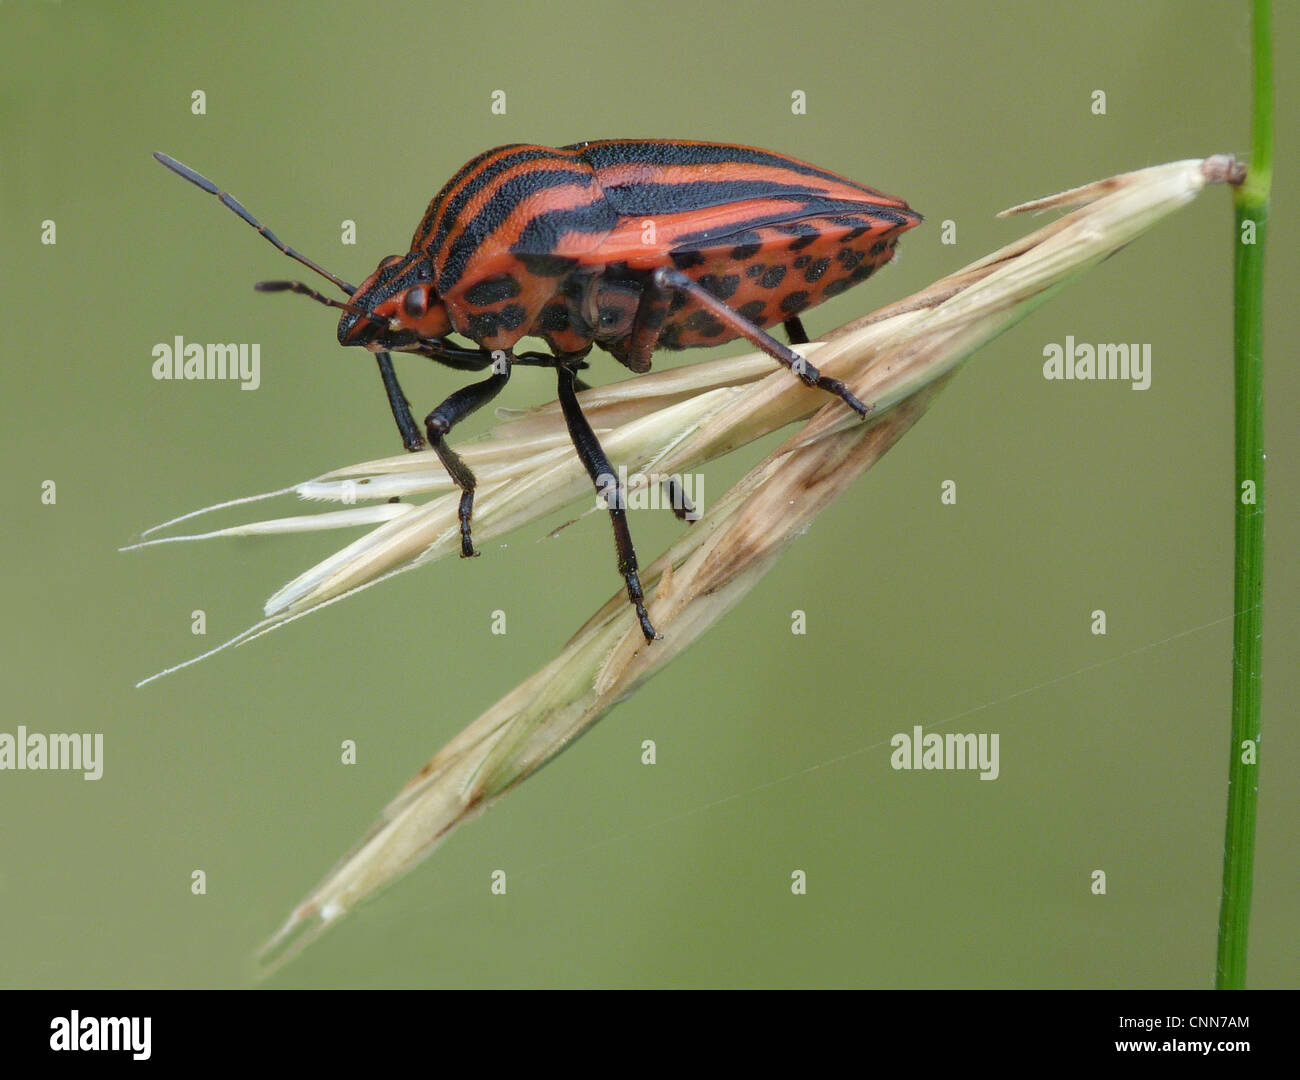 Rot-schwarz gestreiften Shieldbug (Graphosoma unsere) Erwachsenen, ruht auf dem Rasen, Cannobina Tal, Piemont, Norditalien, Juli Stockfoto